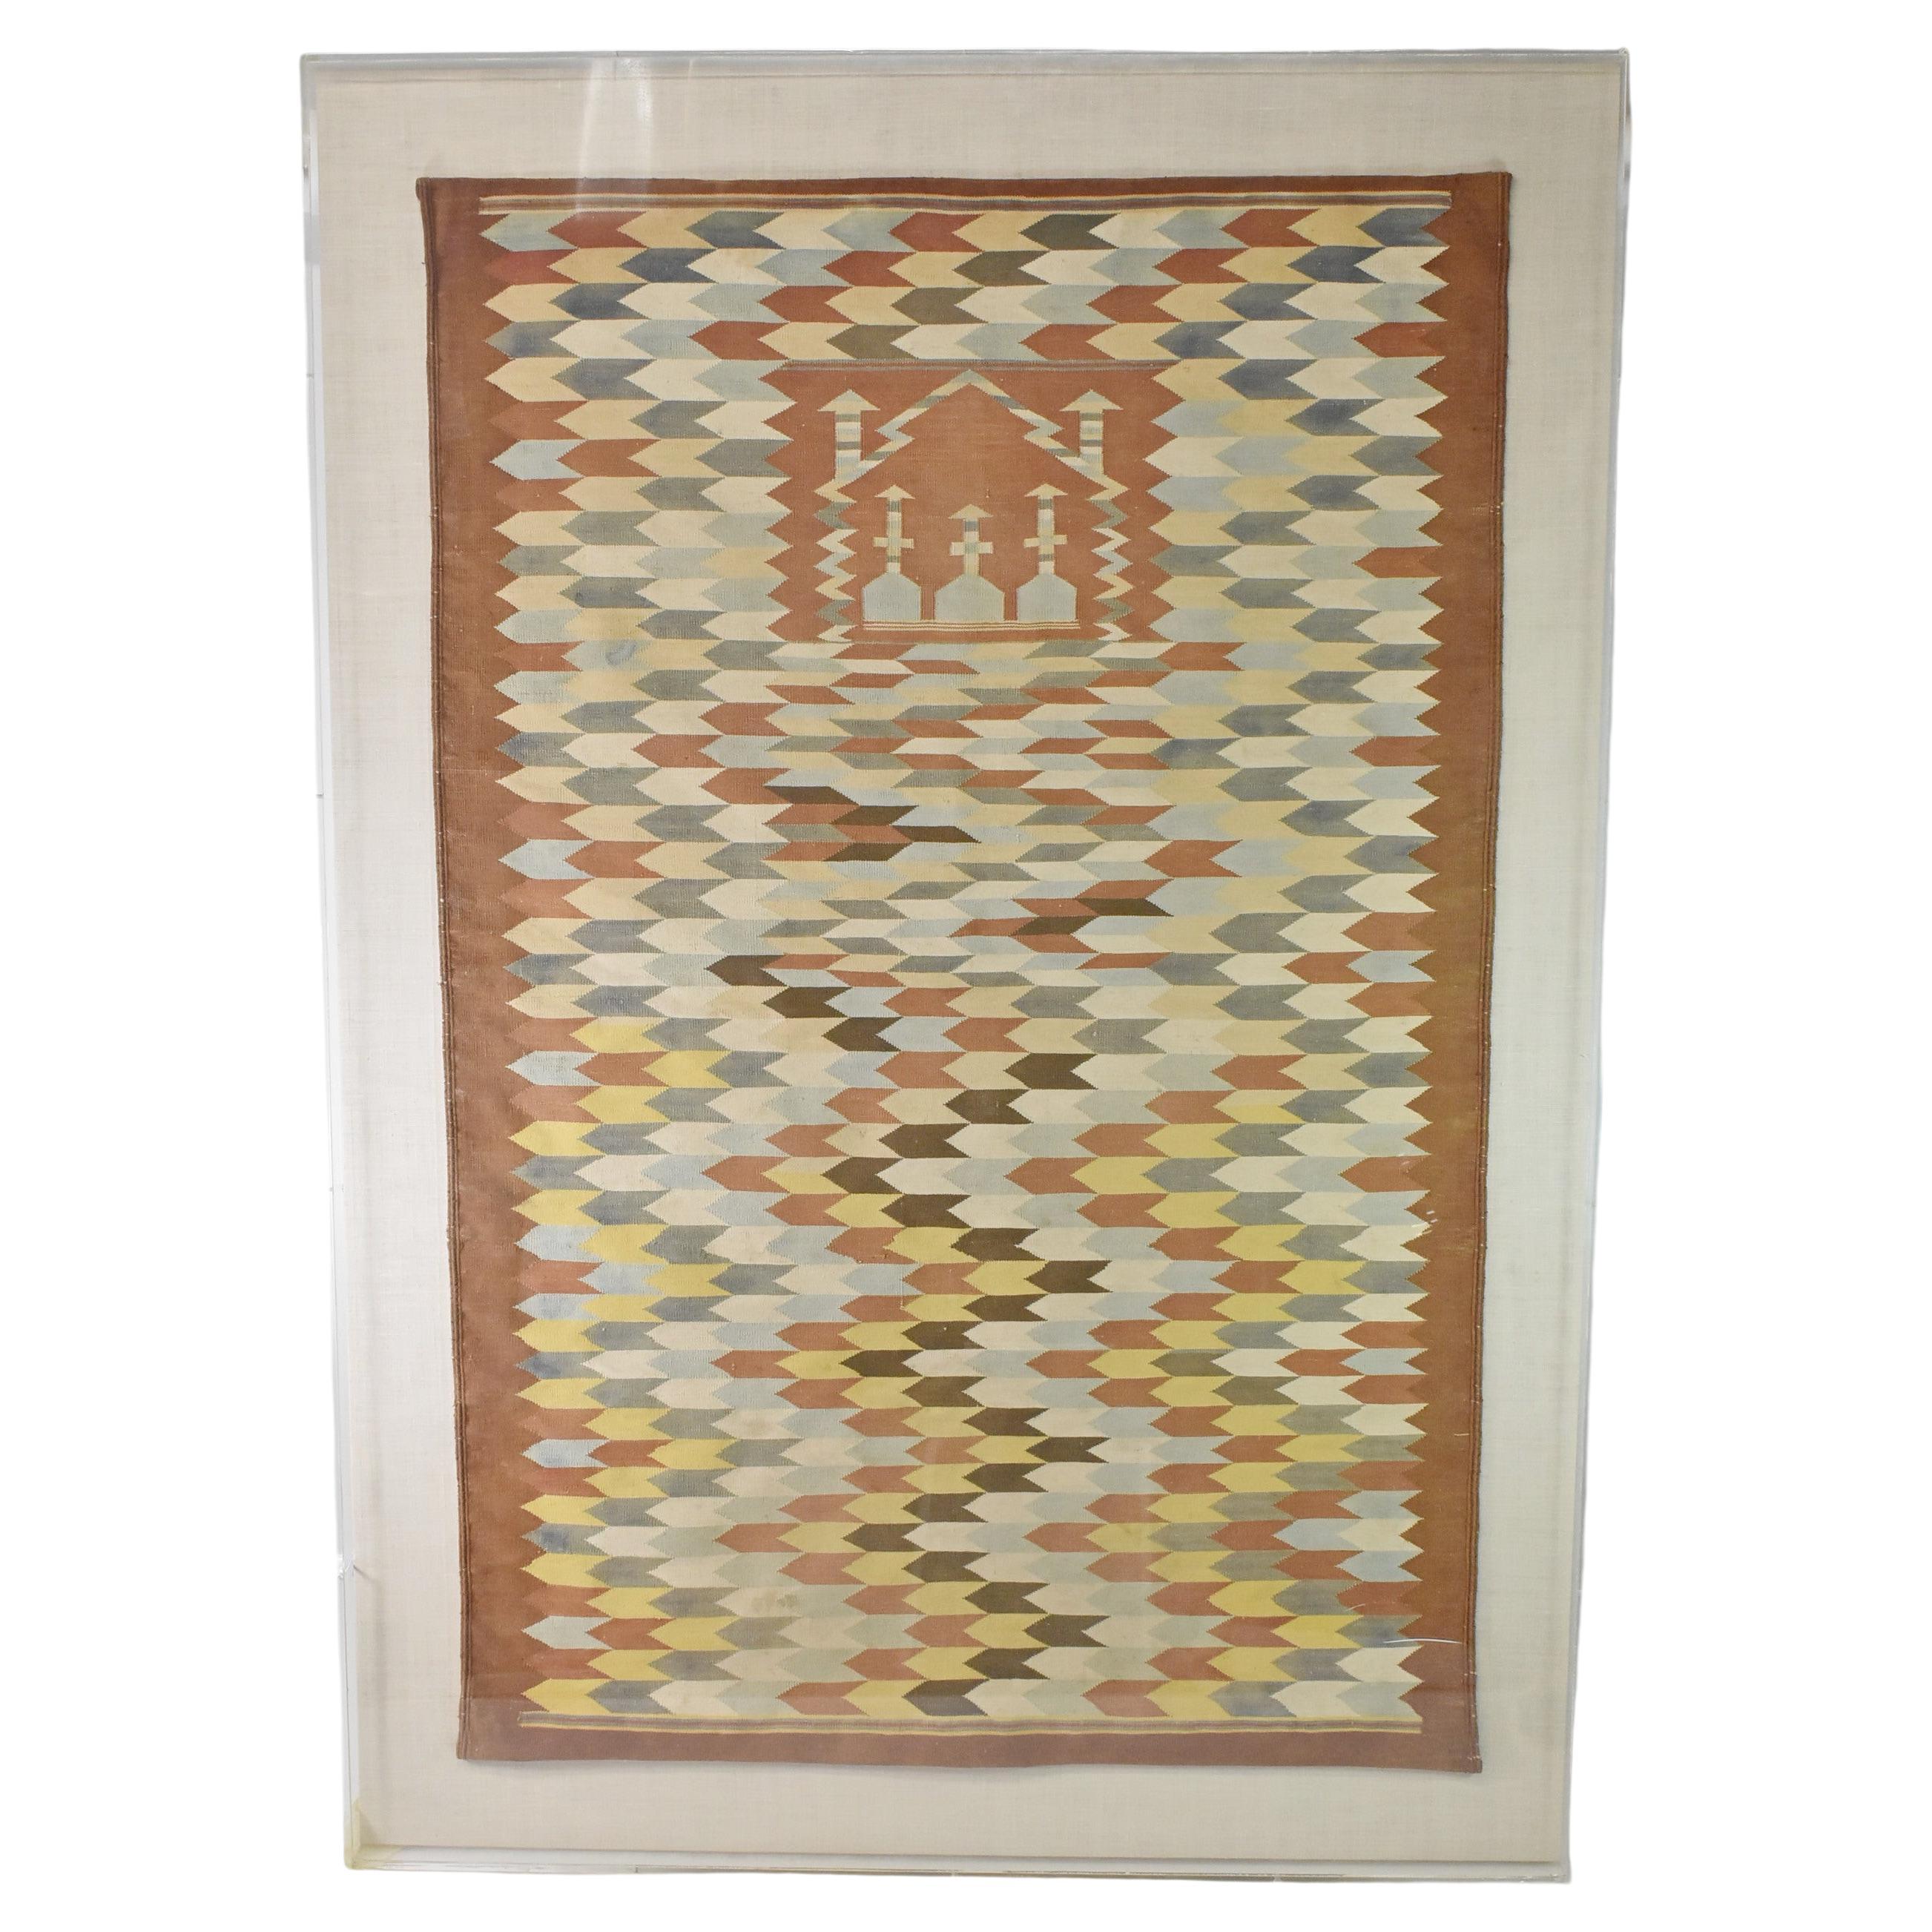 Framed Tribal Prayer Rug For Sale